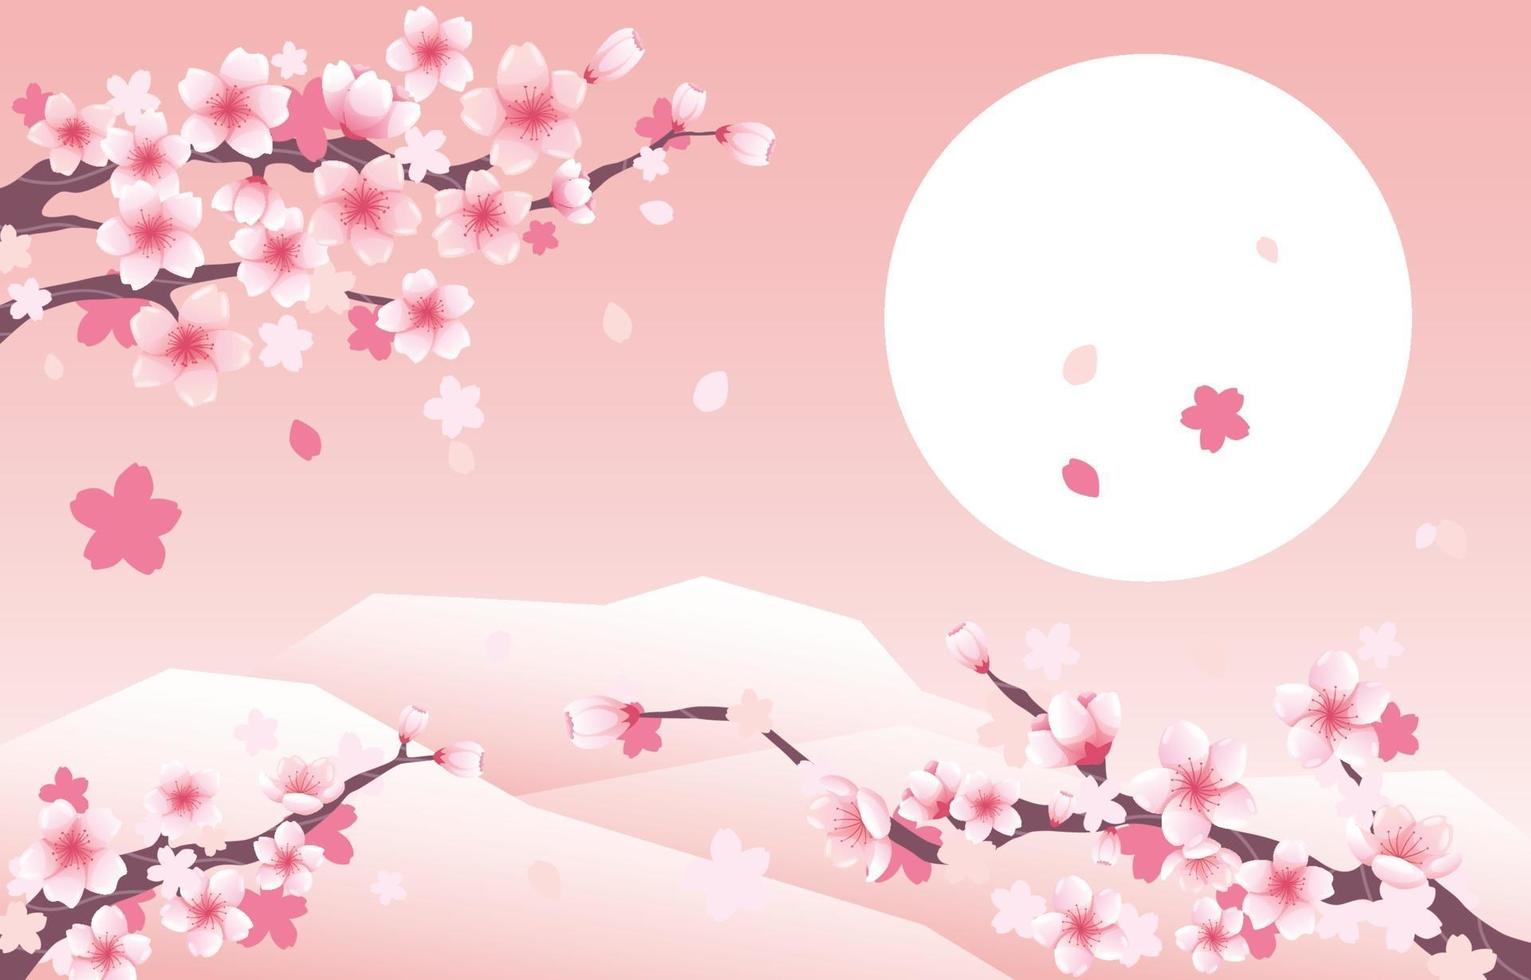 sfondo di fiori di ciliegio vettore